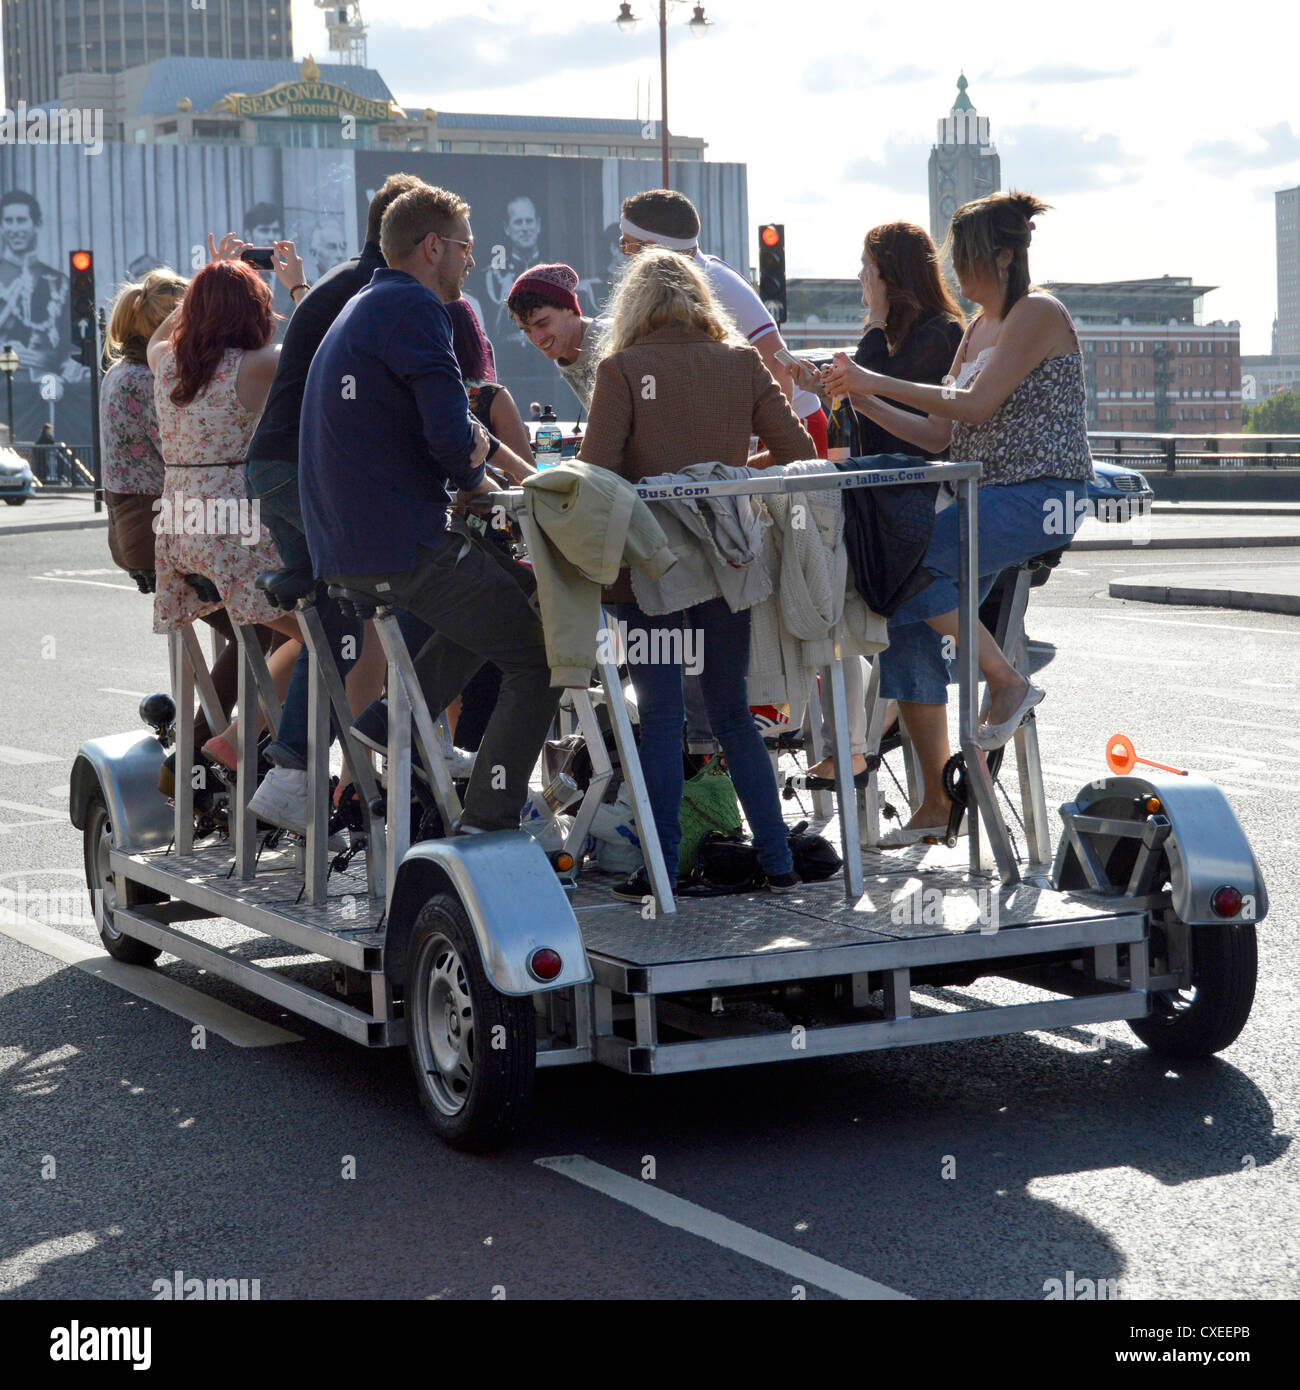 Eine Gruppe von Männern und Frauen genießen eine energiegeladene Tour durch London mit dem Pedi-Bus, auch bekannt als Party-Bike, Bier, Fahrradpedal, Crawler, Pedal, Pub, Party-Bike, England, Großbritannien Stockfoto